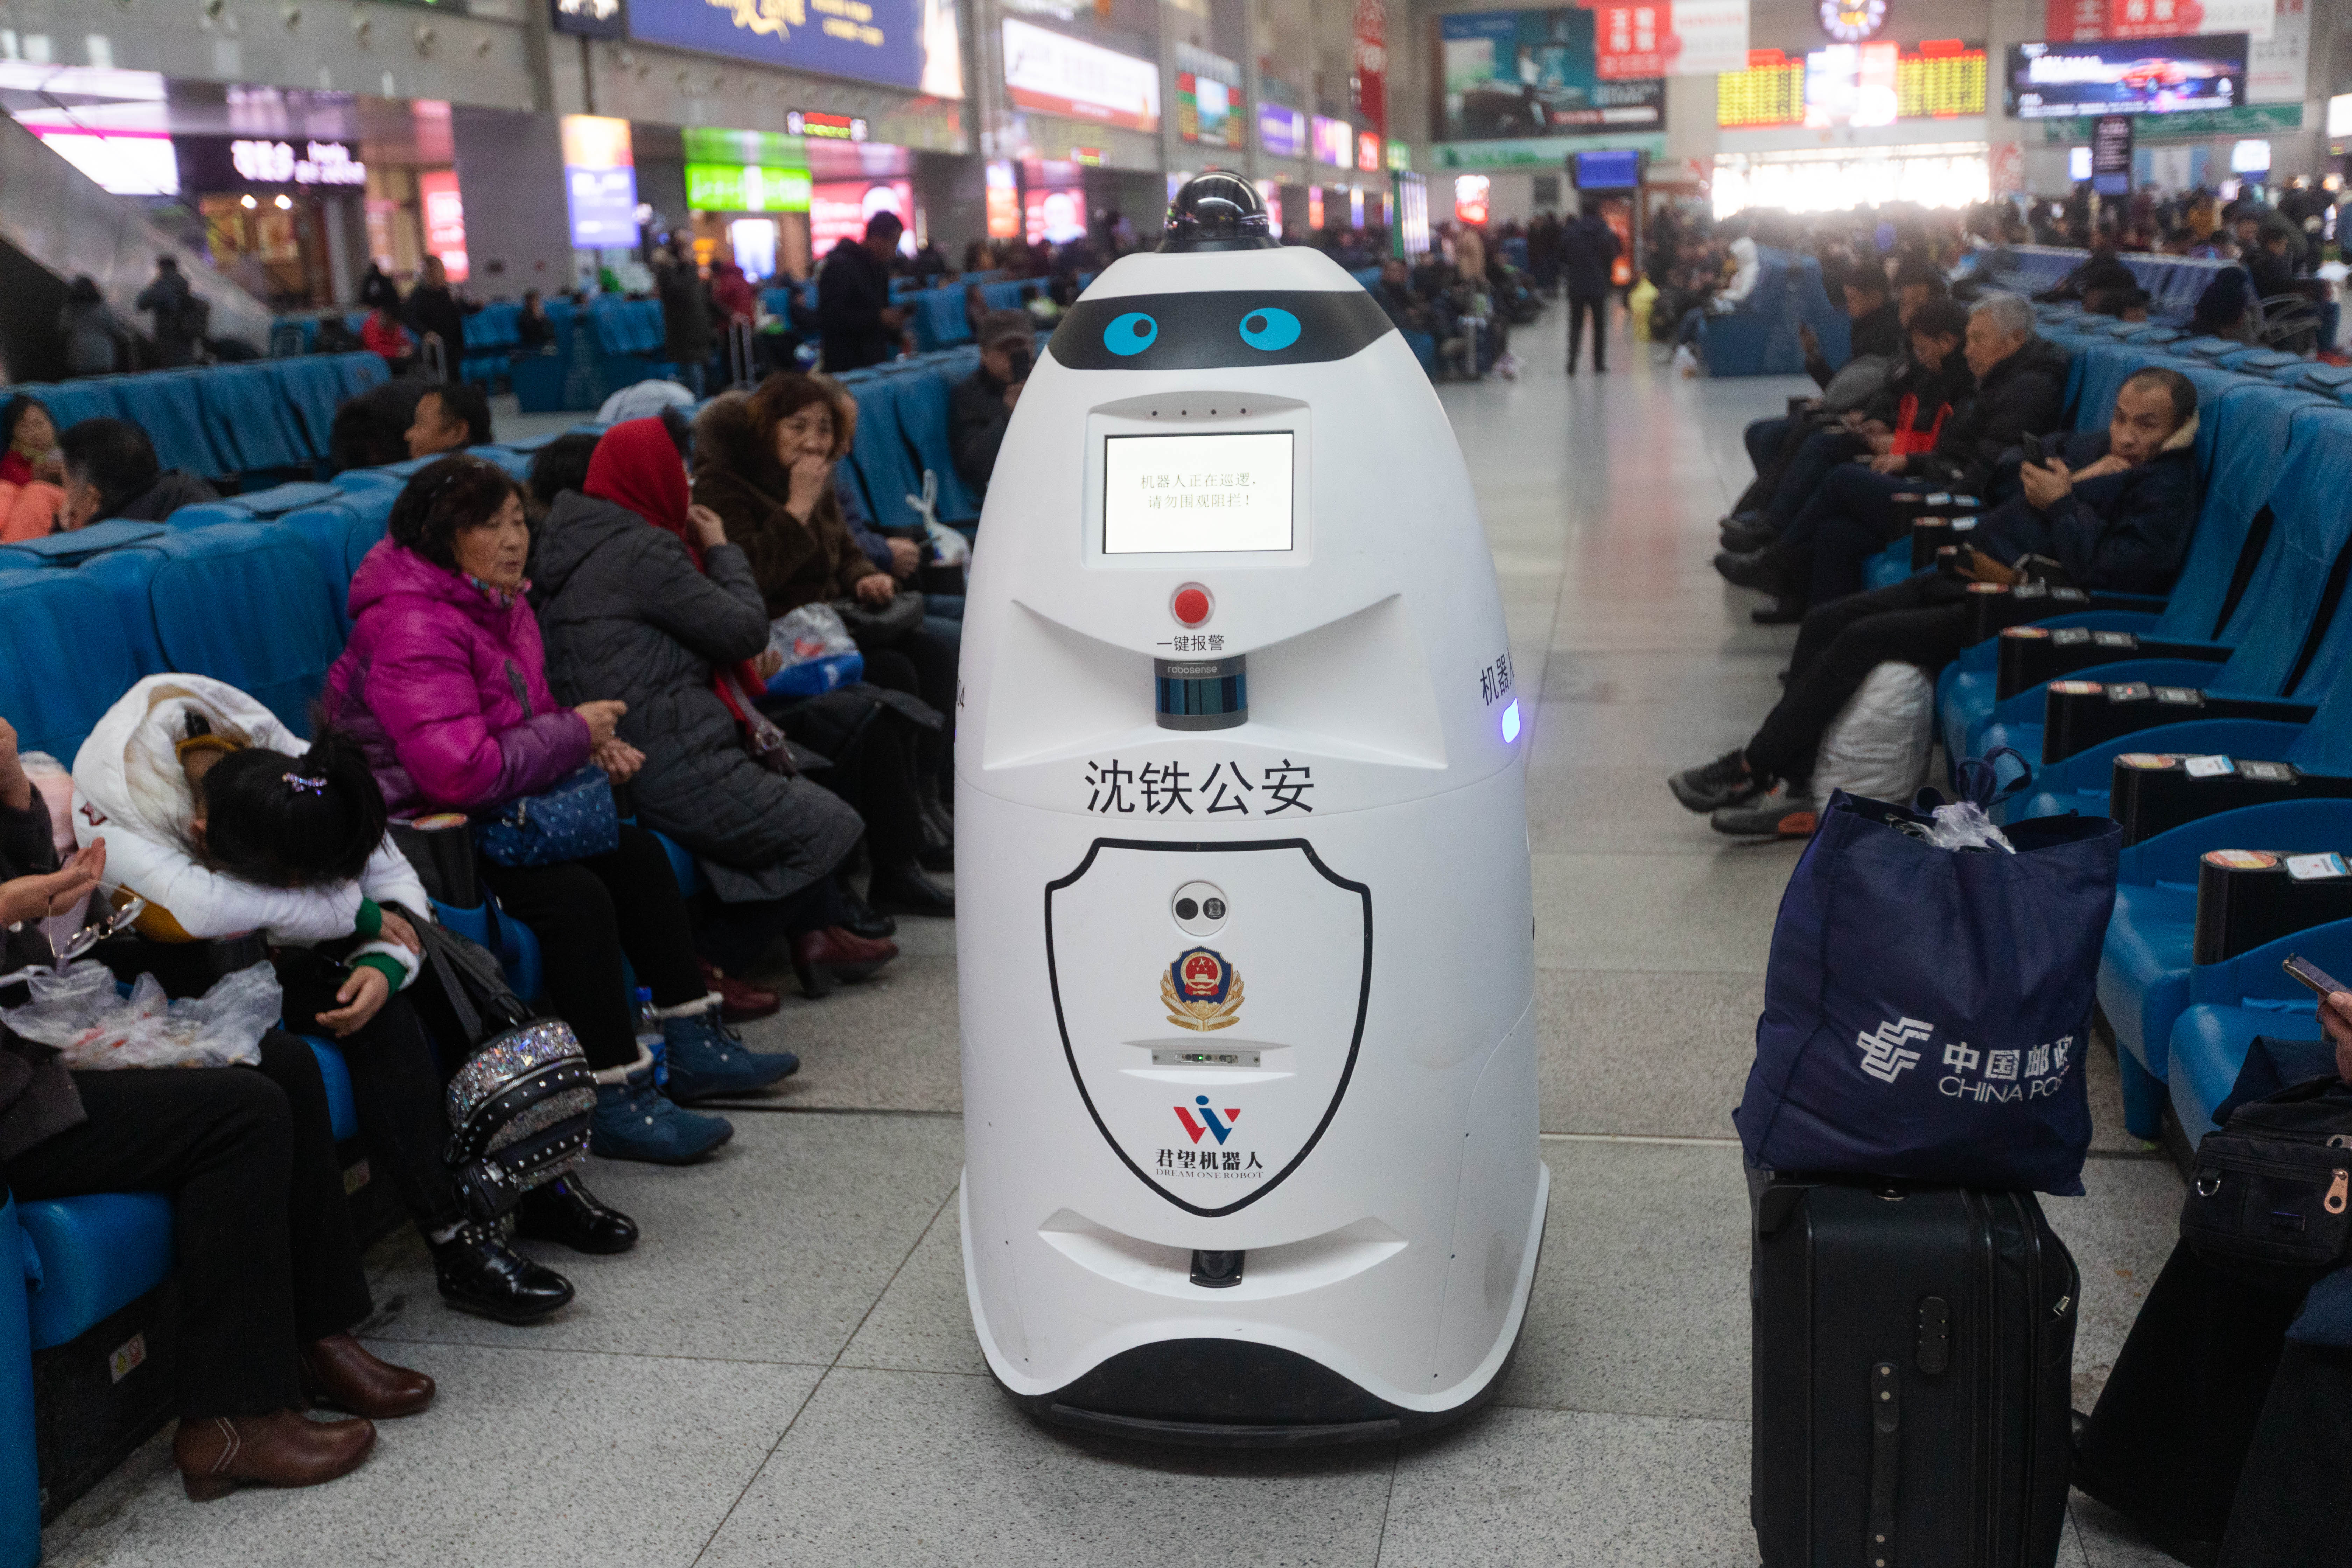 Polizeiroboter mit Gesichtserkennung patrouillieren in China auf Bahnhöfen